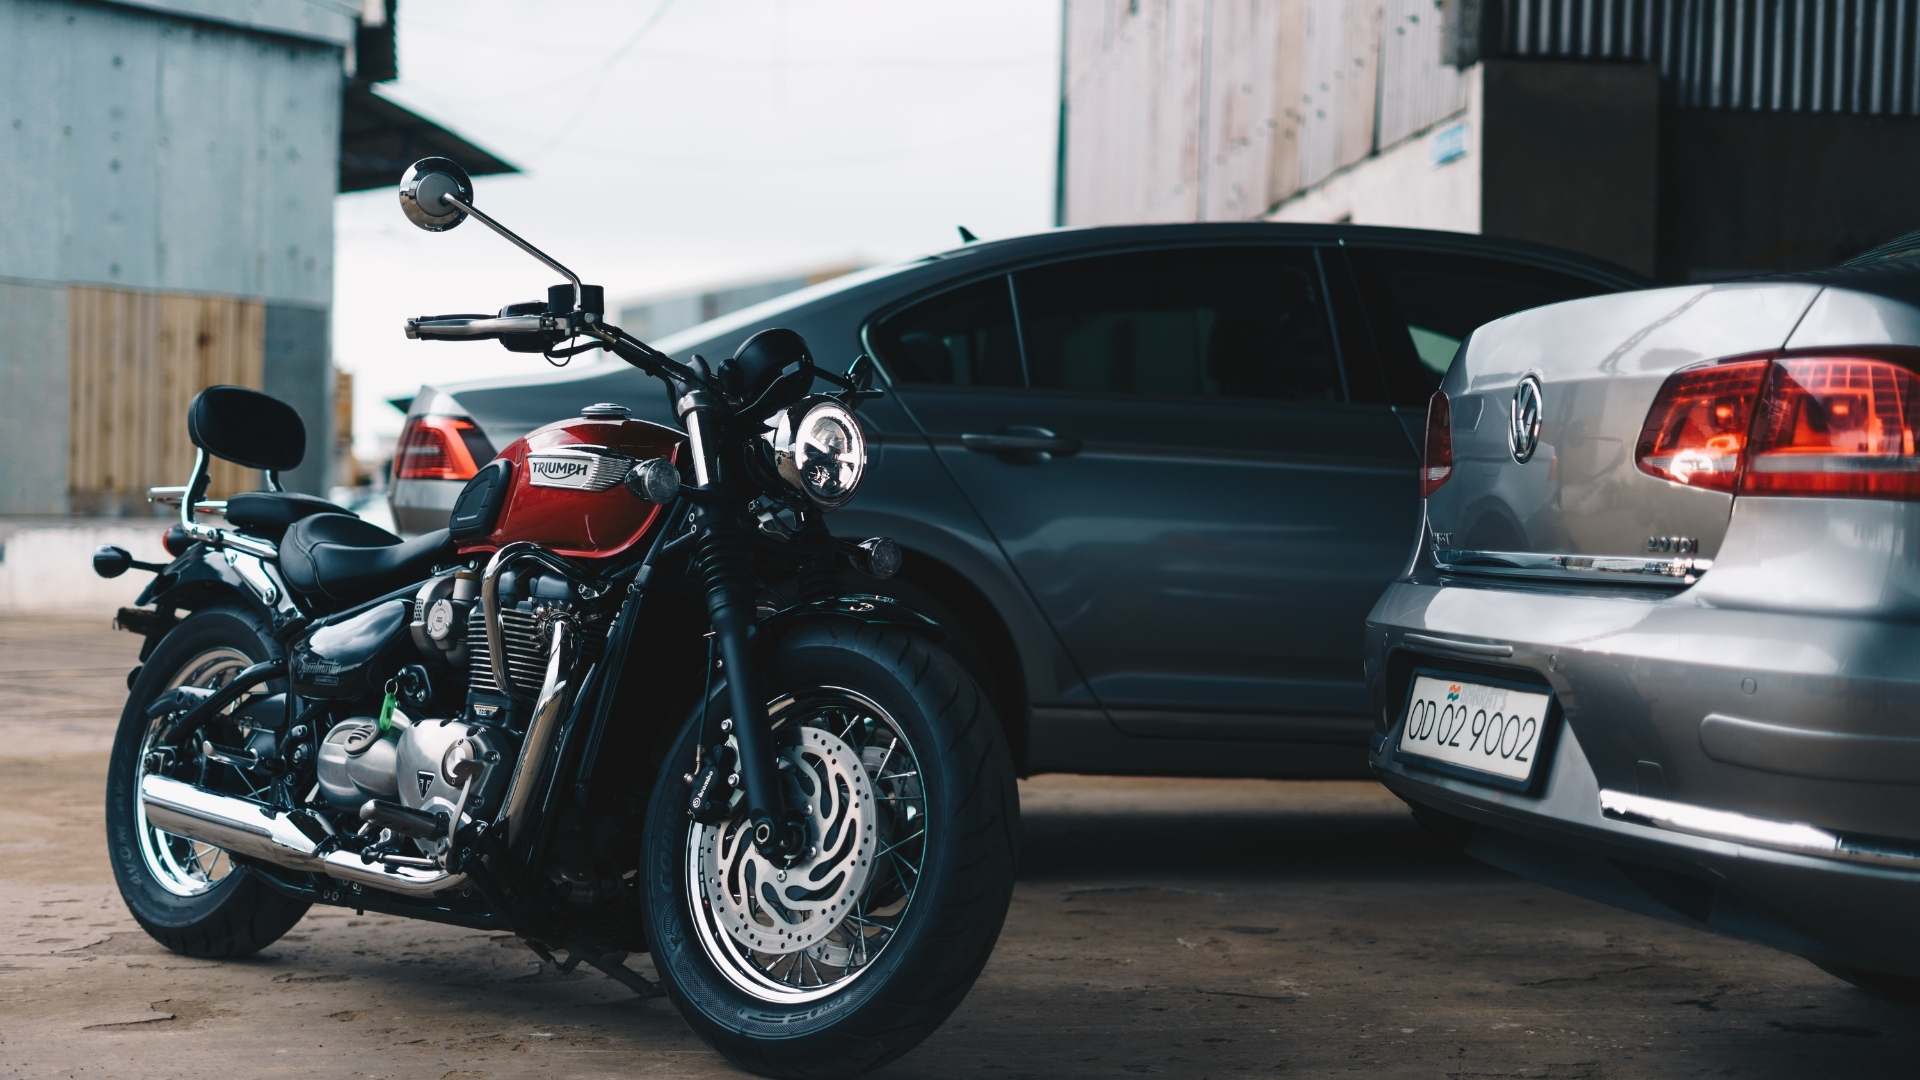 Leilão Mapfre Carros e motos com preços incríveis no Leilão Superbid